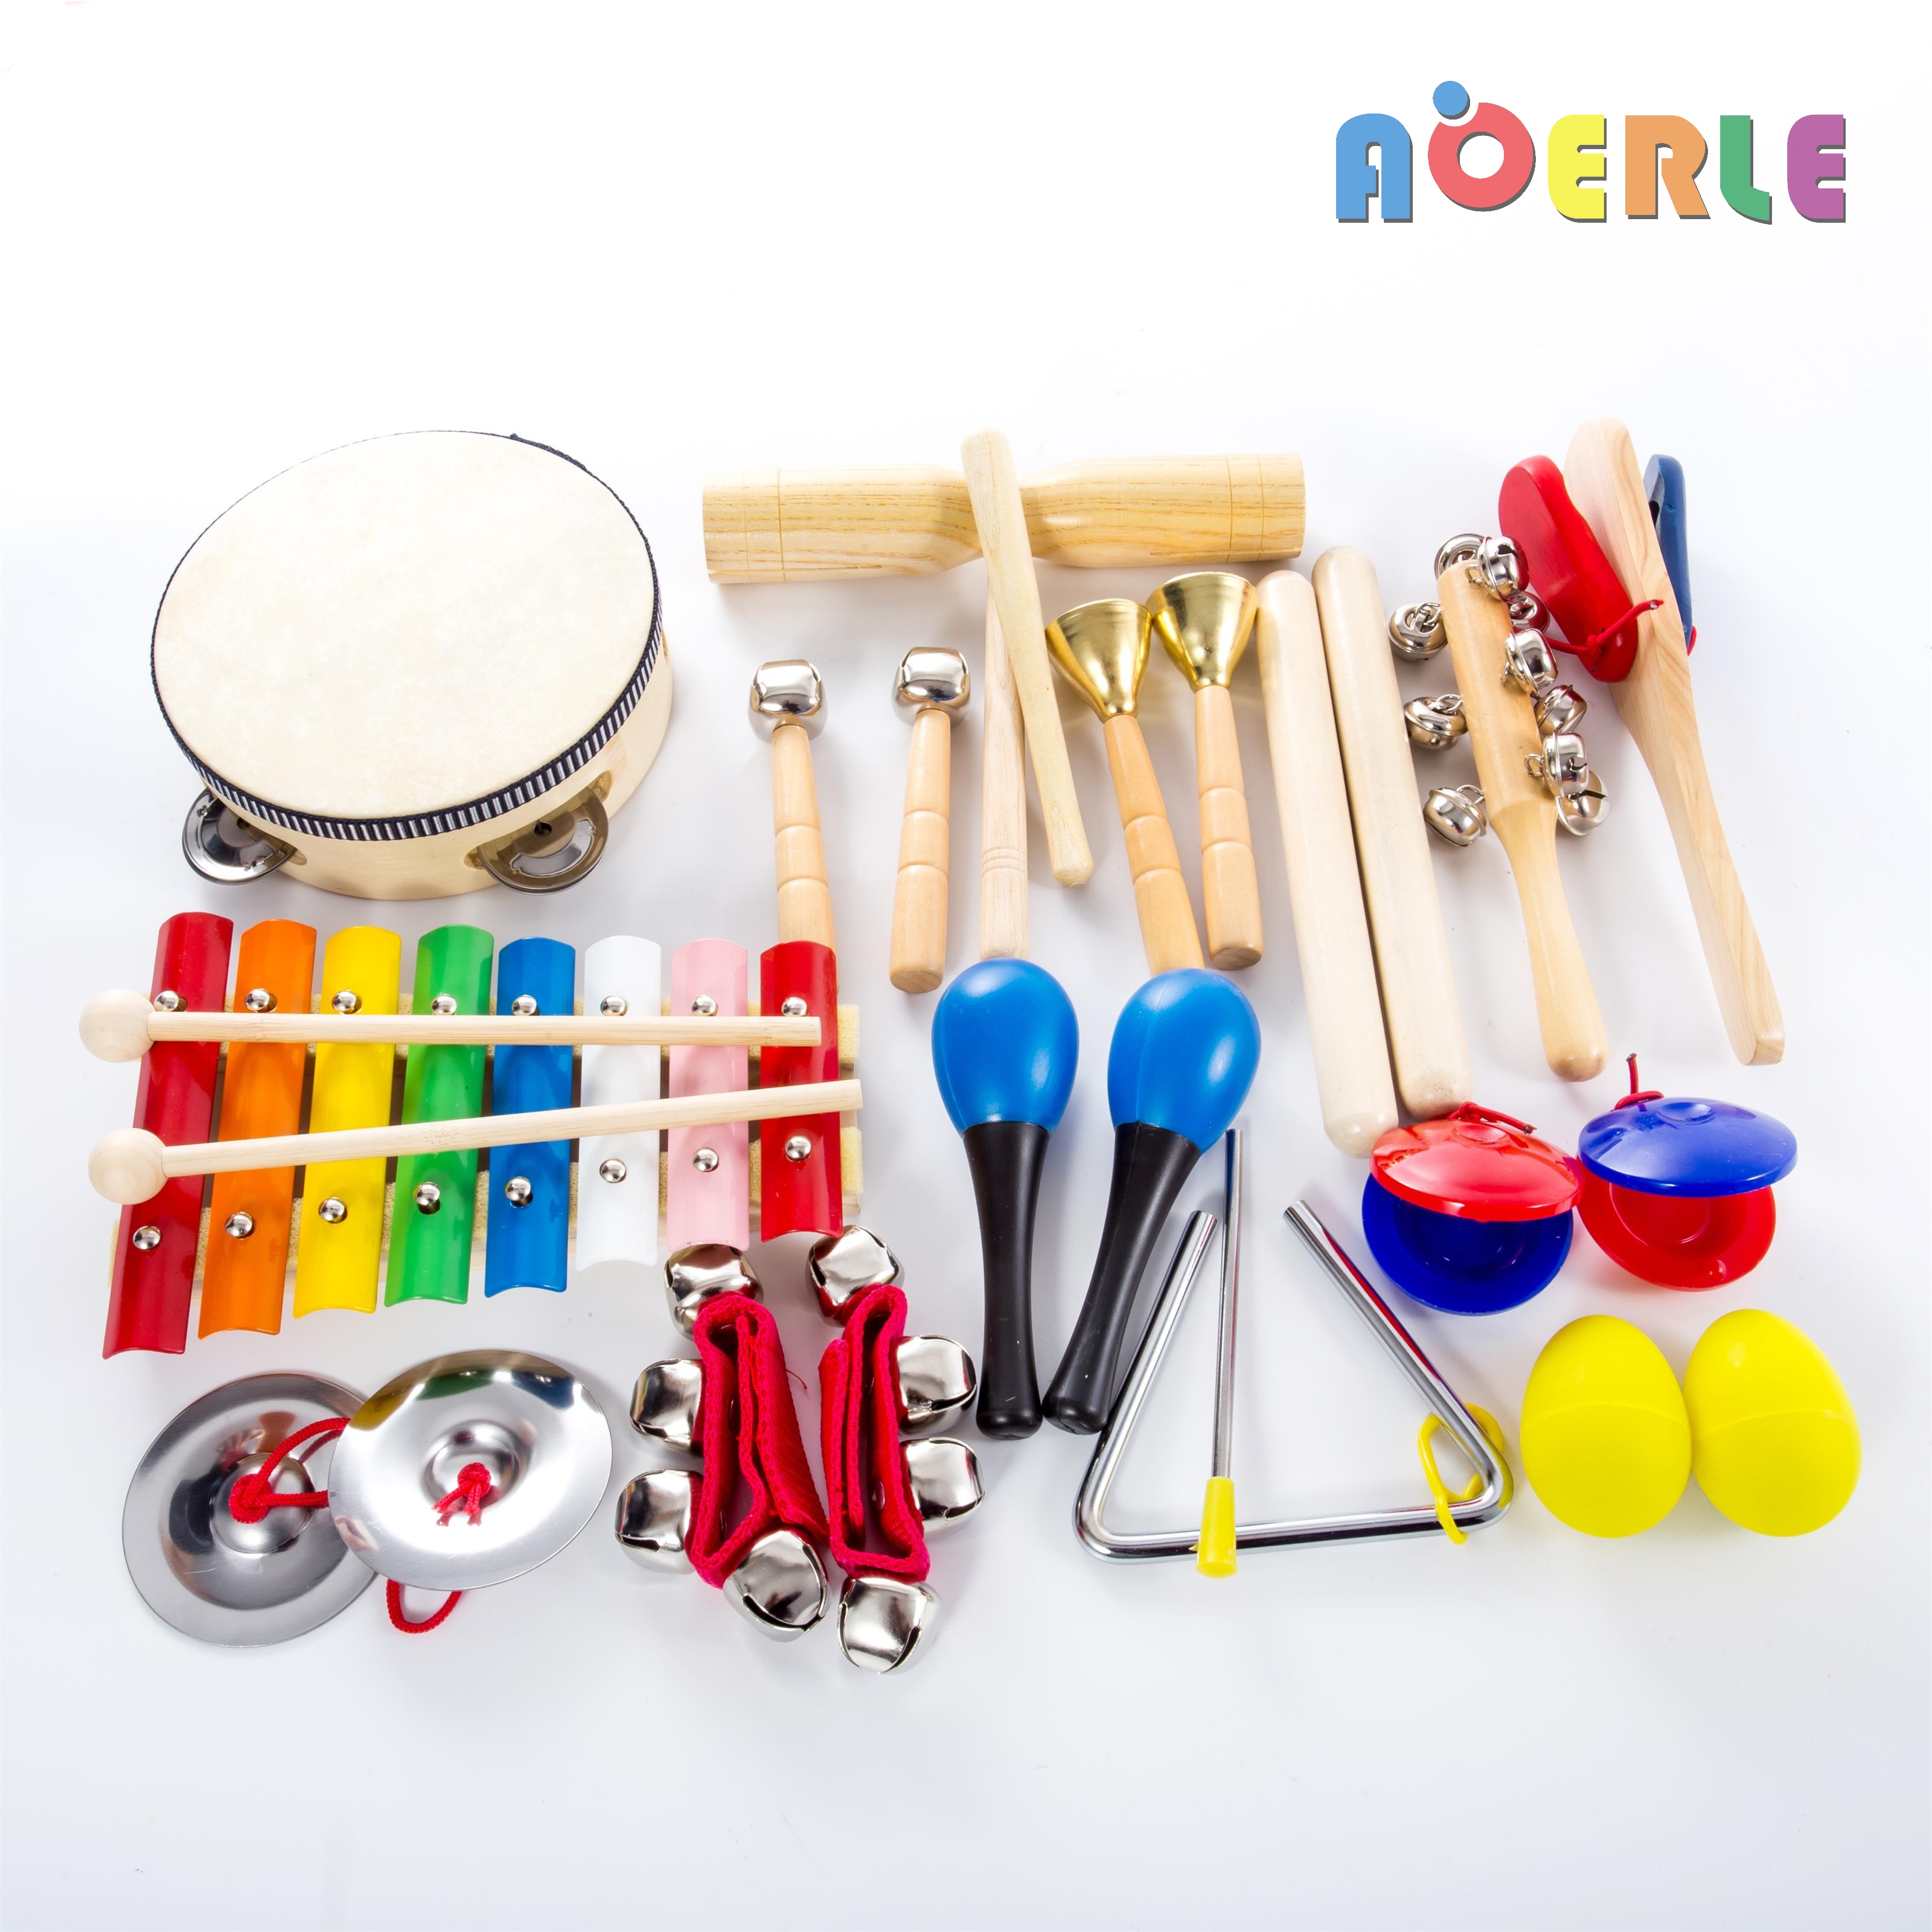 Музыкальные инструменты для детского сада купить в интернет-магазине Игросити